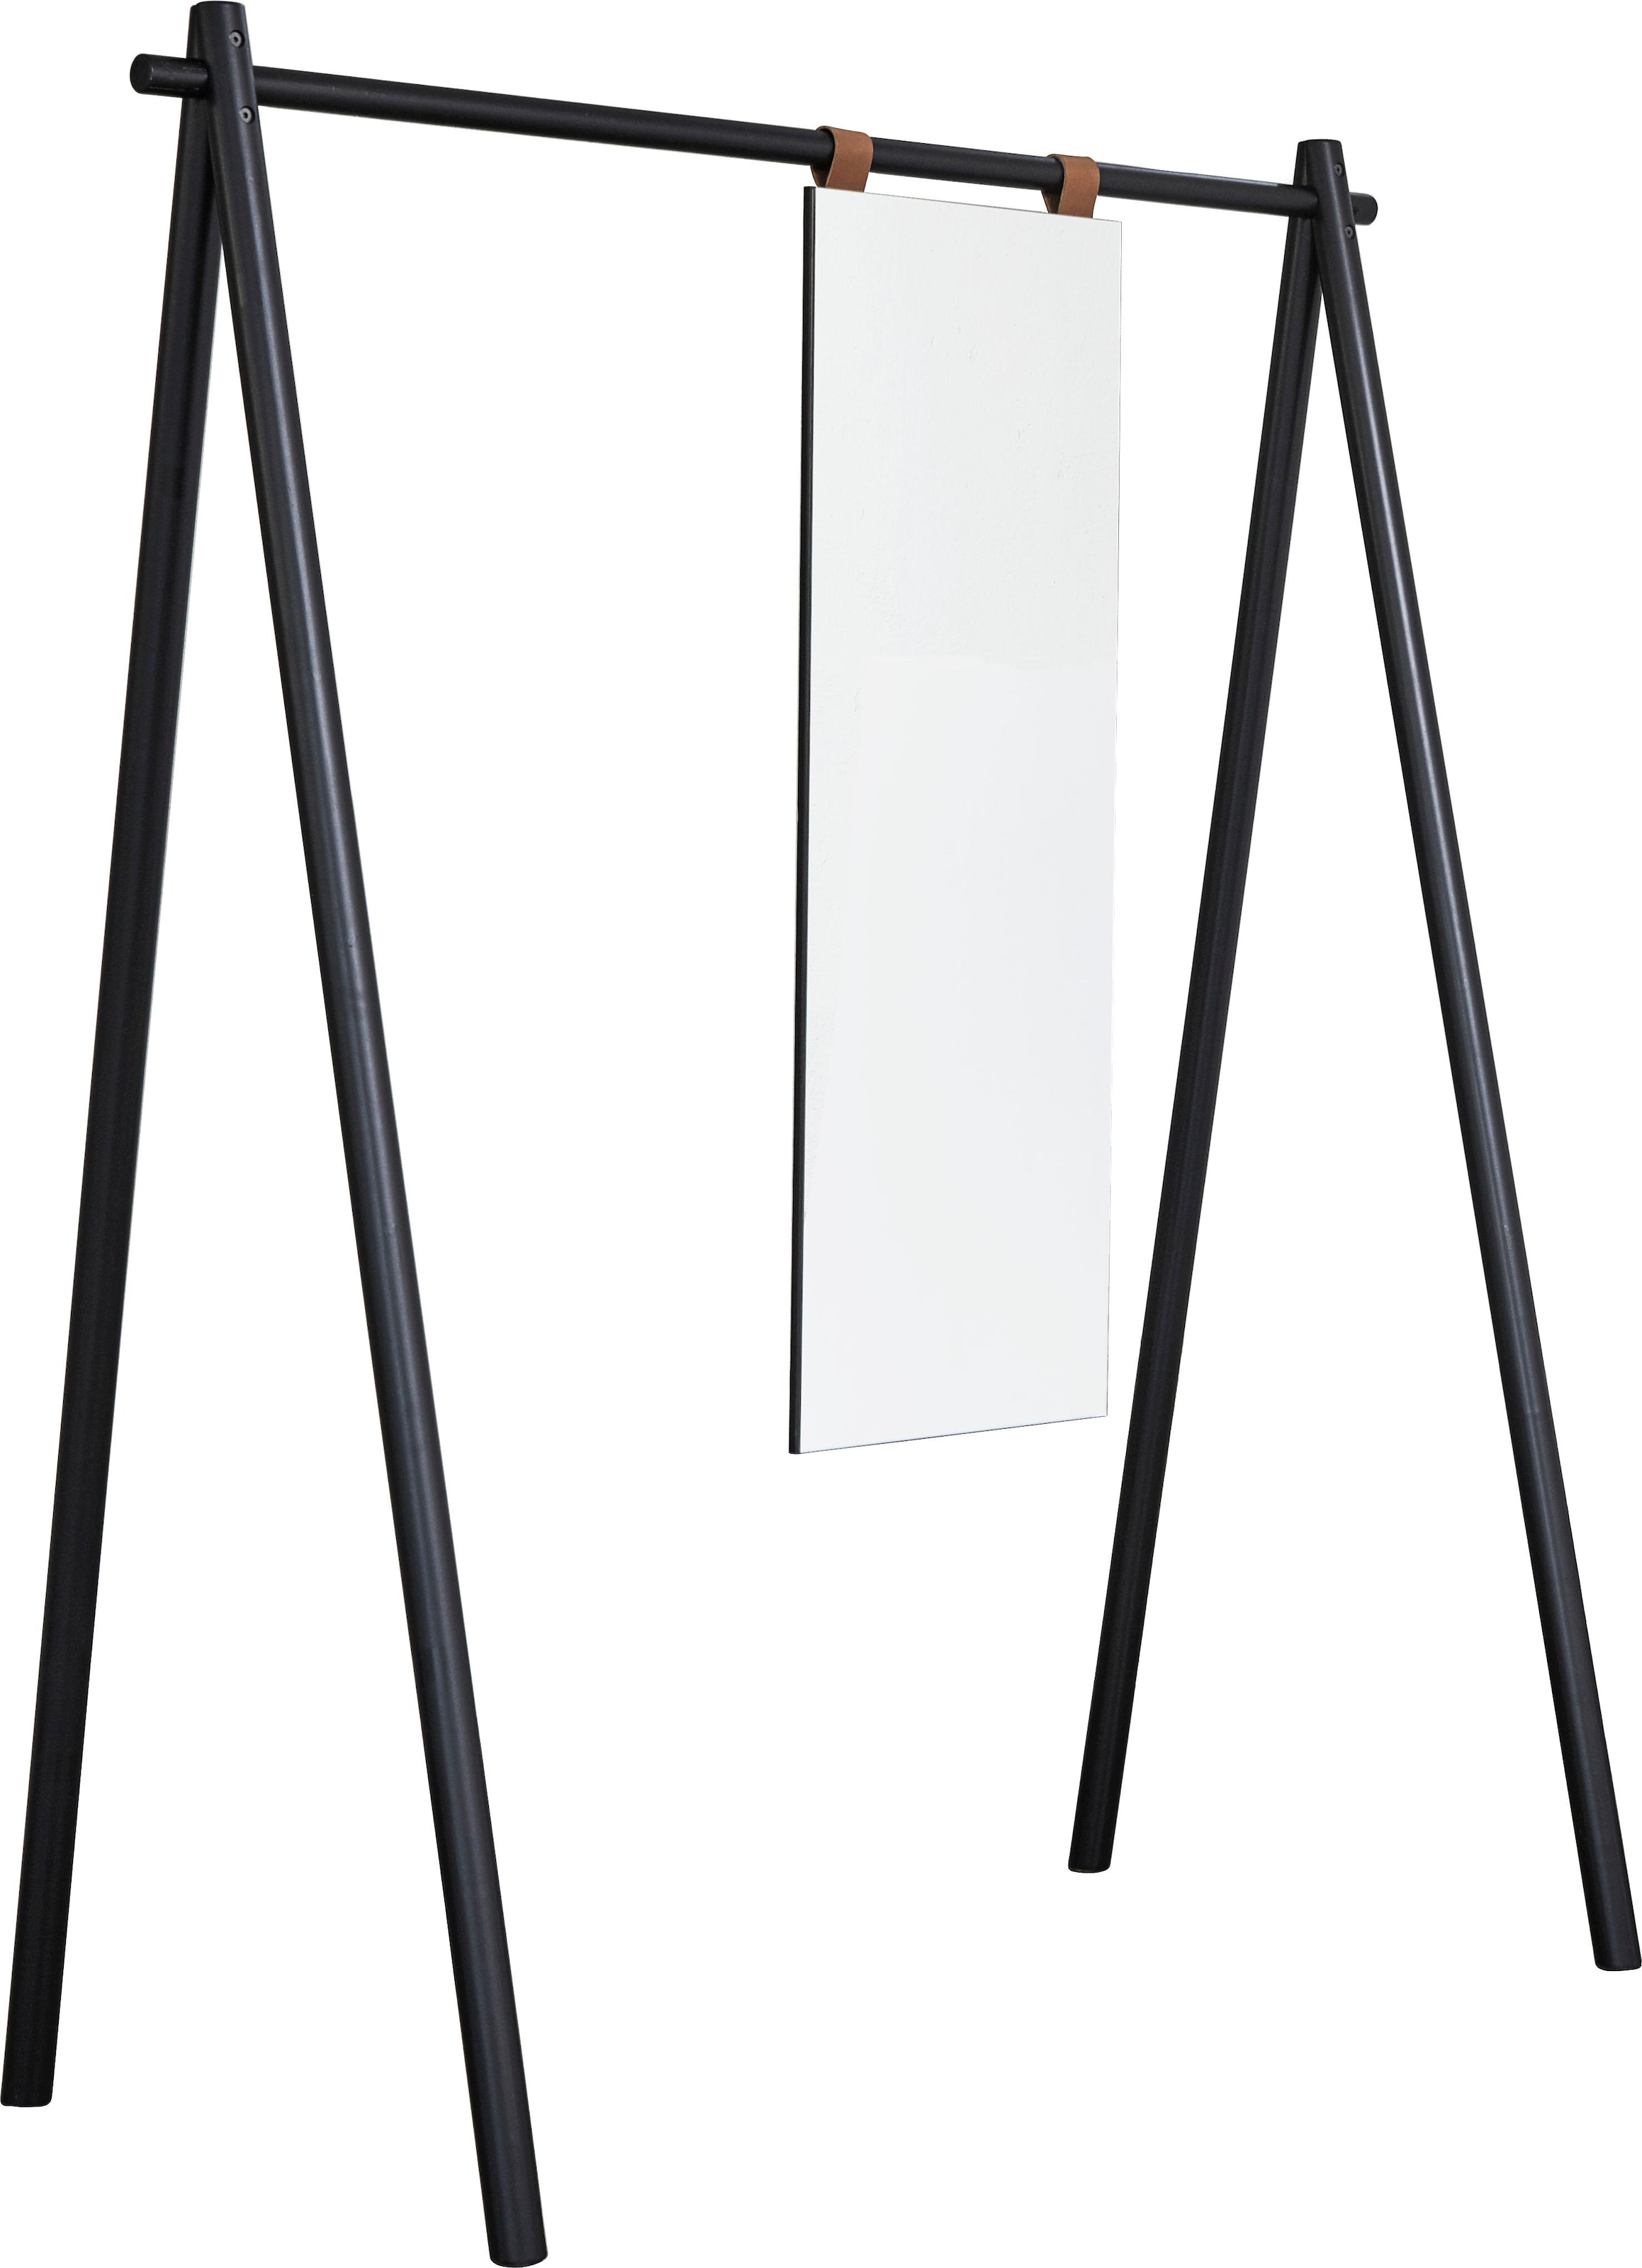 Karup Design Garderobenständer »Hongi«, Aus FSC-zertifiziertem Kiefernholz, 75 cm breit